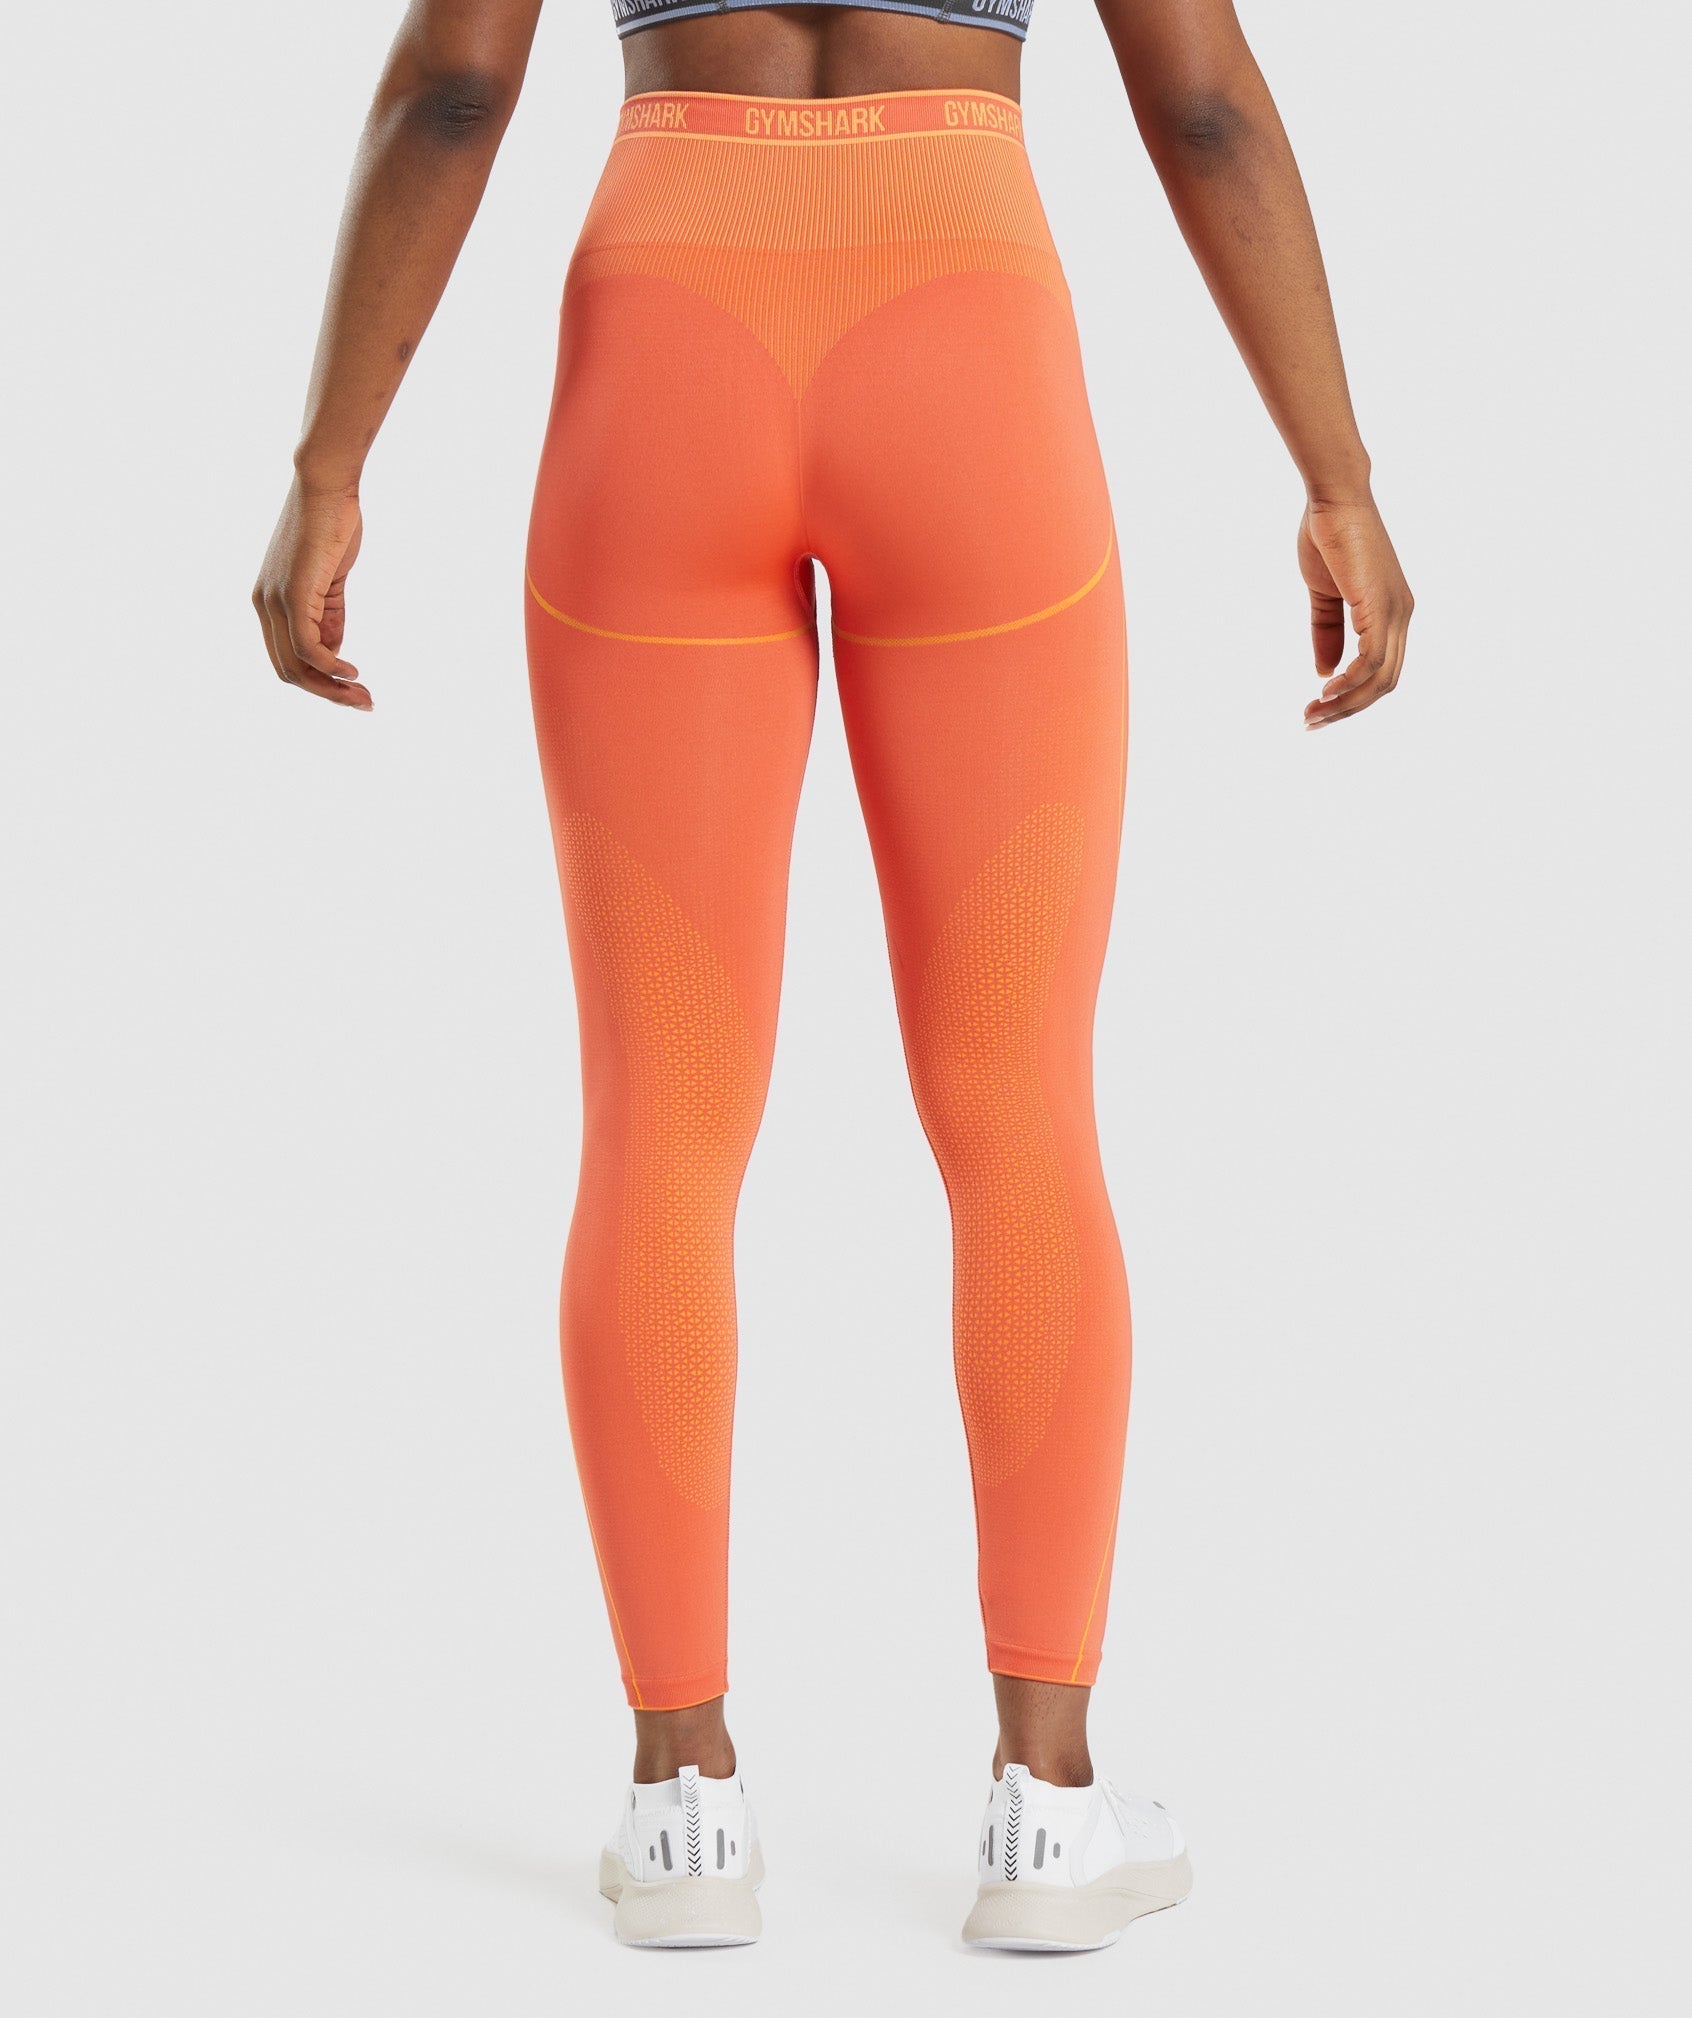 Gymshark Sport Leggings - Orange Print